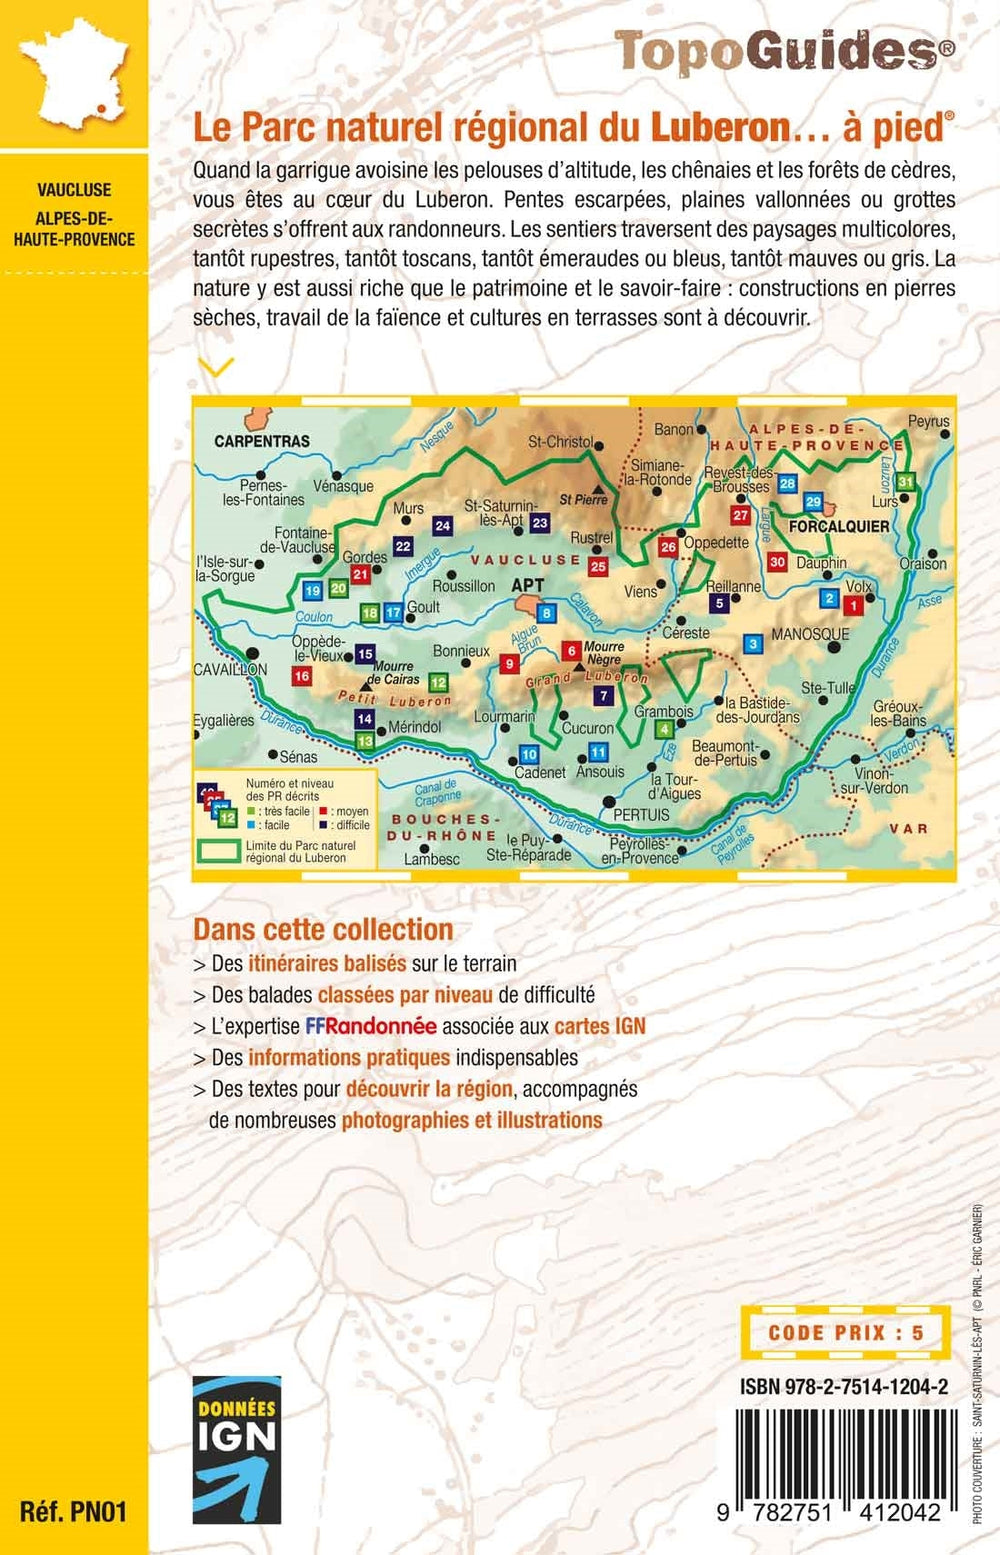 Topoguide de randonnée - Le Parc naturel régional du Luberon à pied | FFR guide de randonnée FFR - Fédération Française de Randonnée 